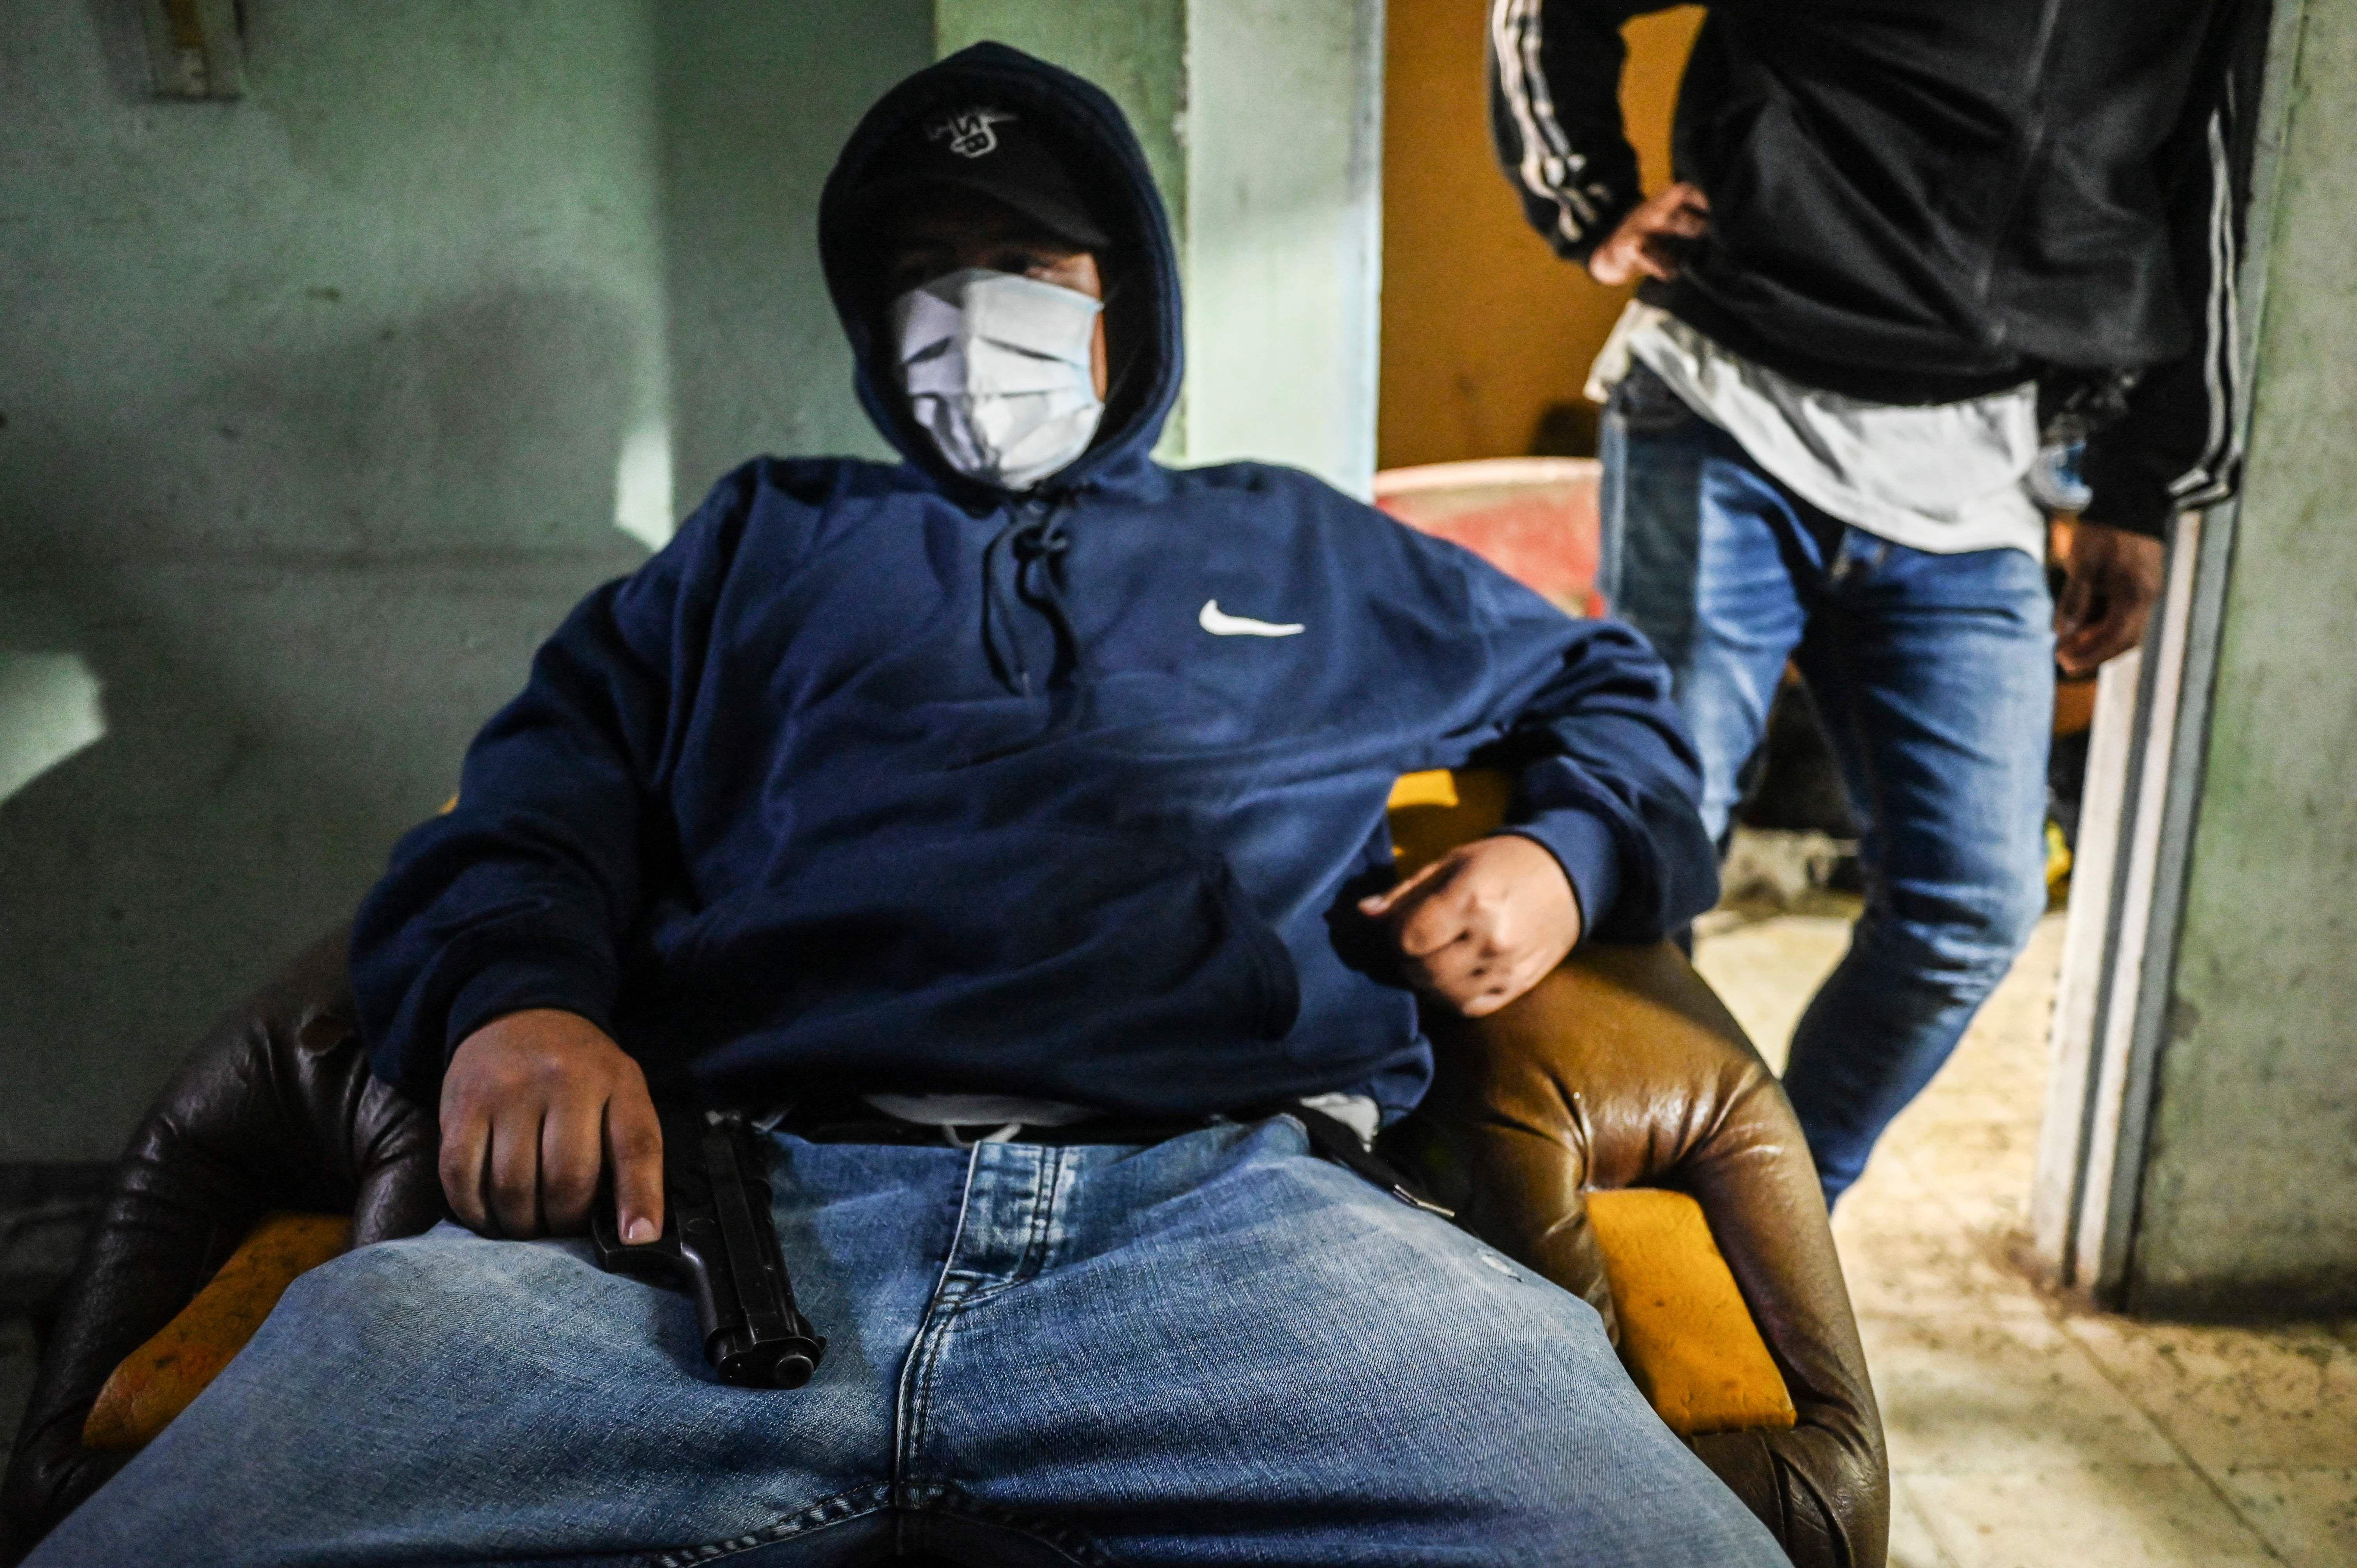 Un miembro de un grupo criminal en Colombia con el rostro cubierto sostiene un arma sentado en una silla.